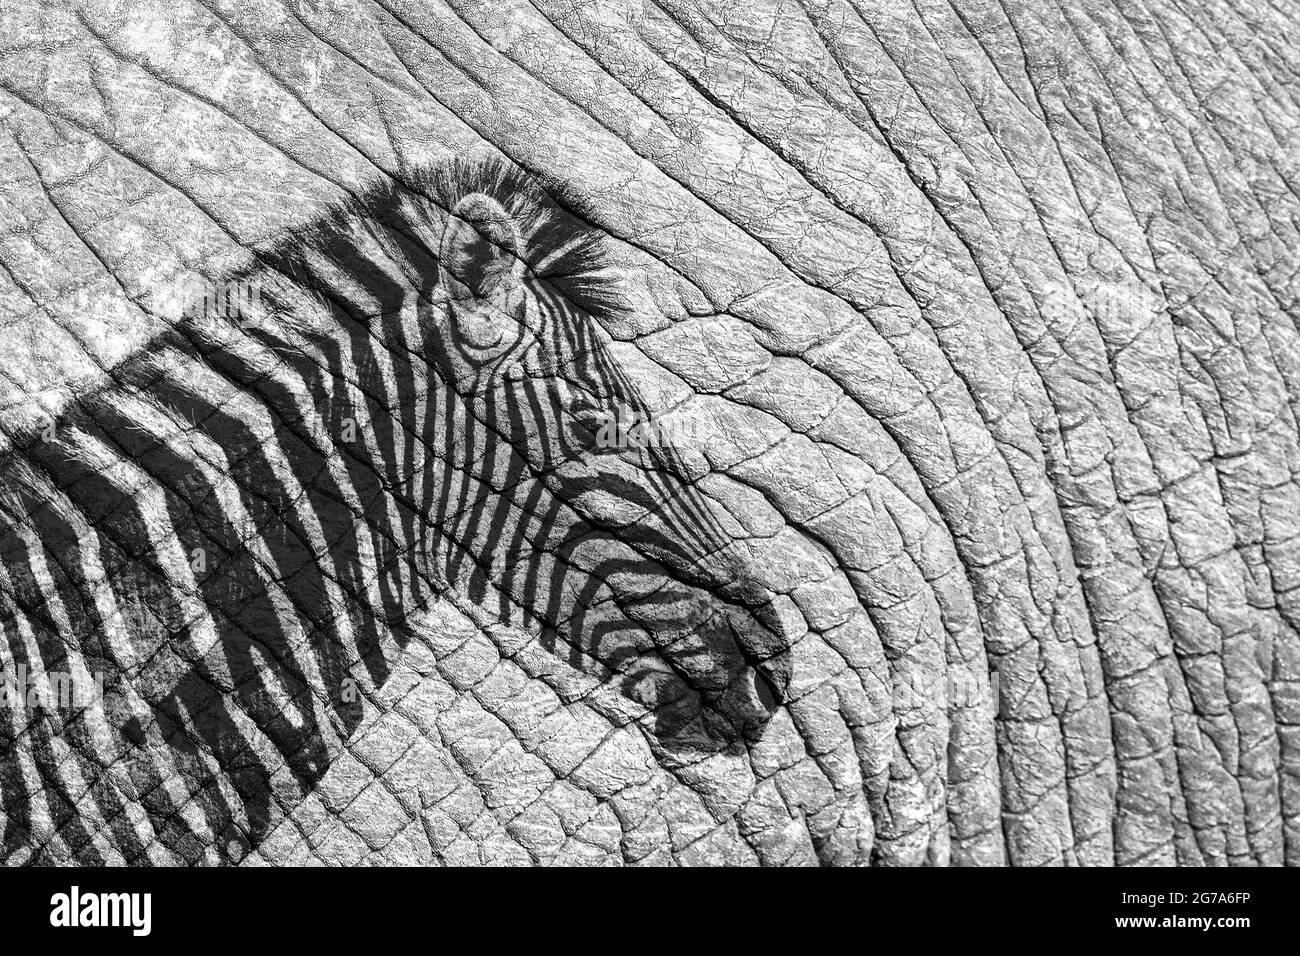 Portrait de zèbre des plaines imprimé sur la peau de l'éléphant de brousse africaine images multiples ; famille d'équidés de espèce Equus quagga burchellii Banque D'Images